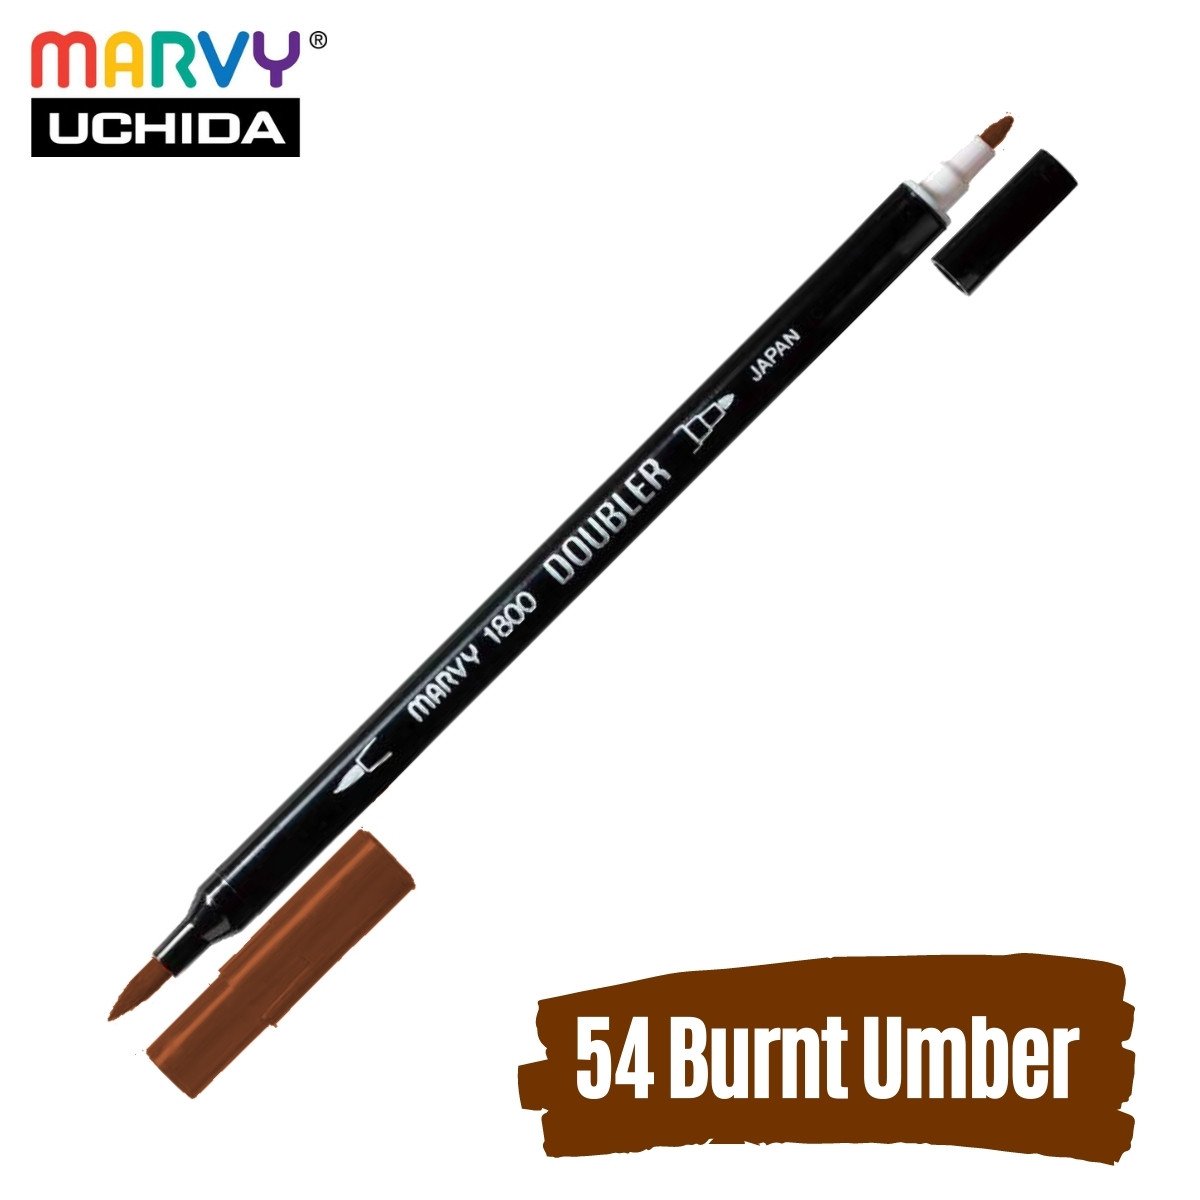 Marvy Artist Brush Pen 1800 Çift Taraflı Firça Uçlu Kalem 54 Burnt Umber